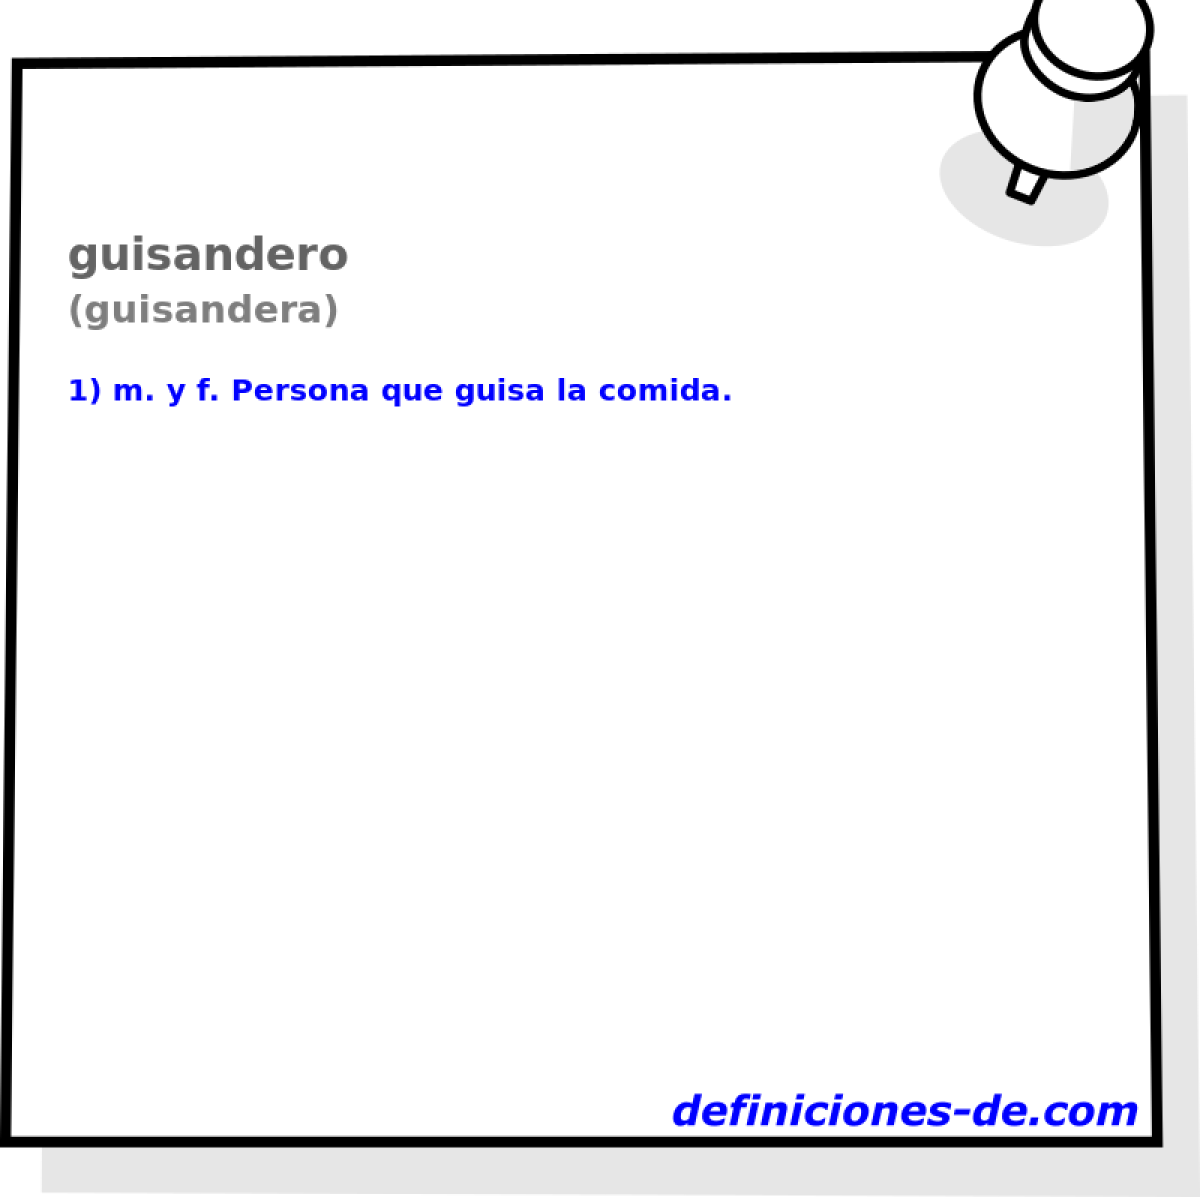 guisandero (guisandera)